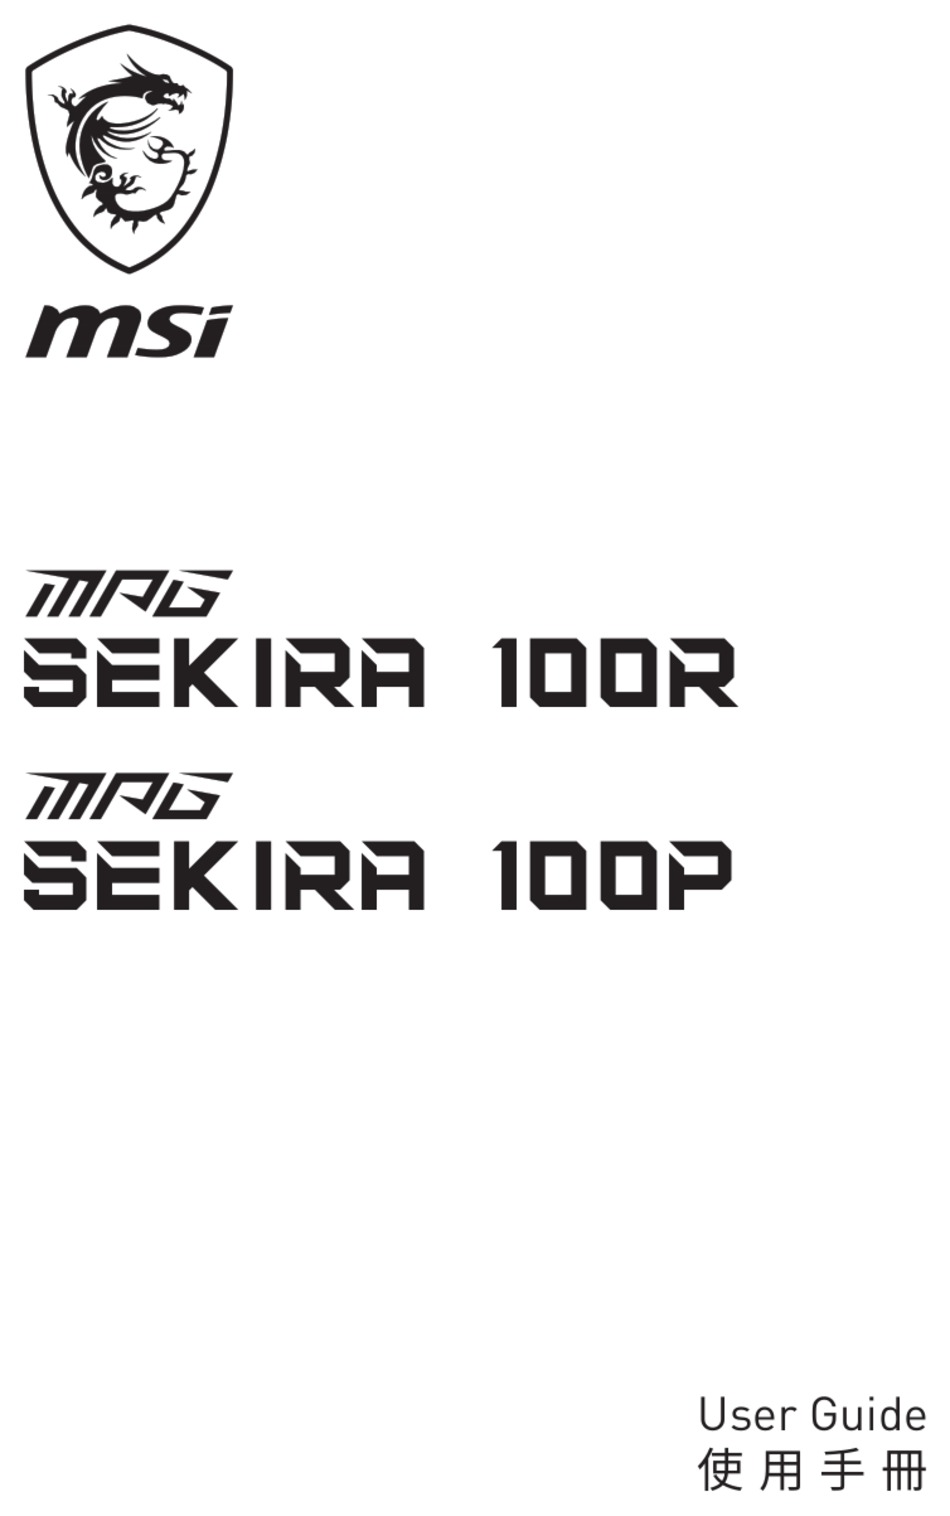 MSI MPG SEKIRA 100R USER MANUAL Pdf Download | ManualsLib